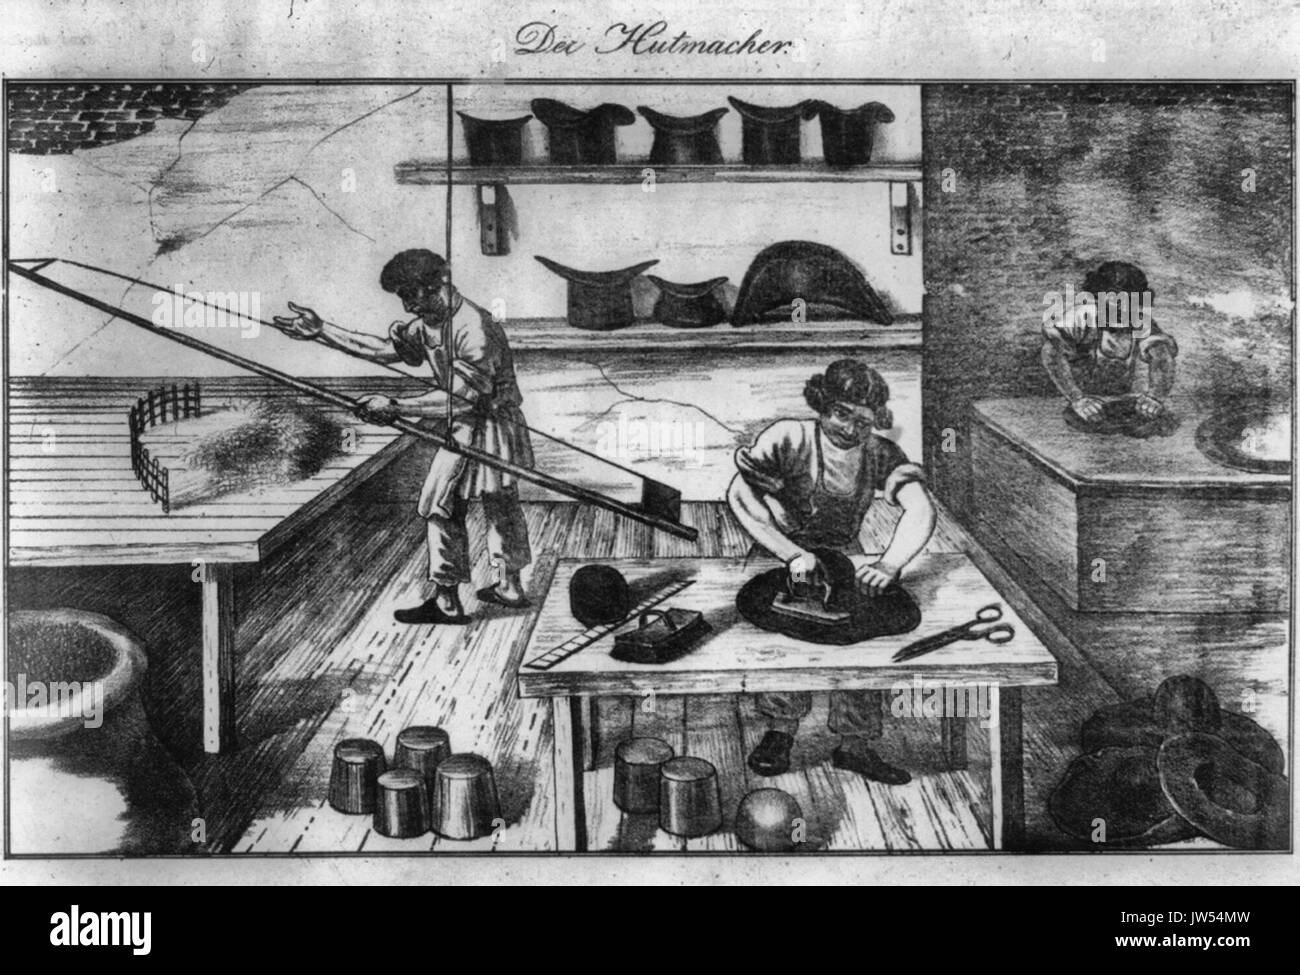 Der Hutmacher - mostra tre uomini al lavoro in una merceria o hat maker shop, circa 1850 Foto Stock